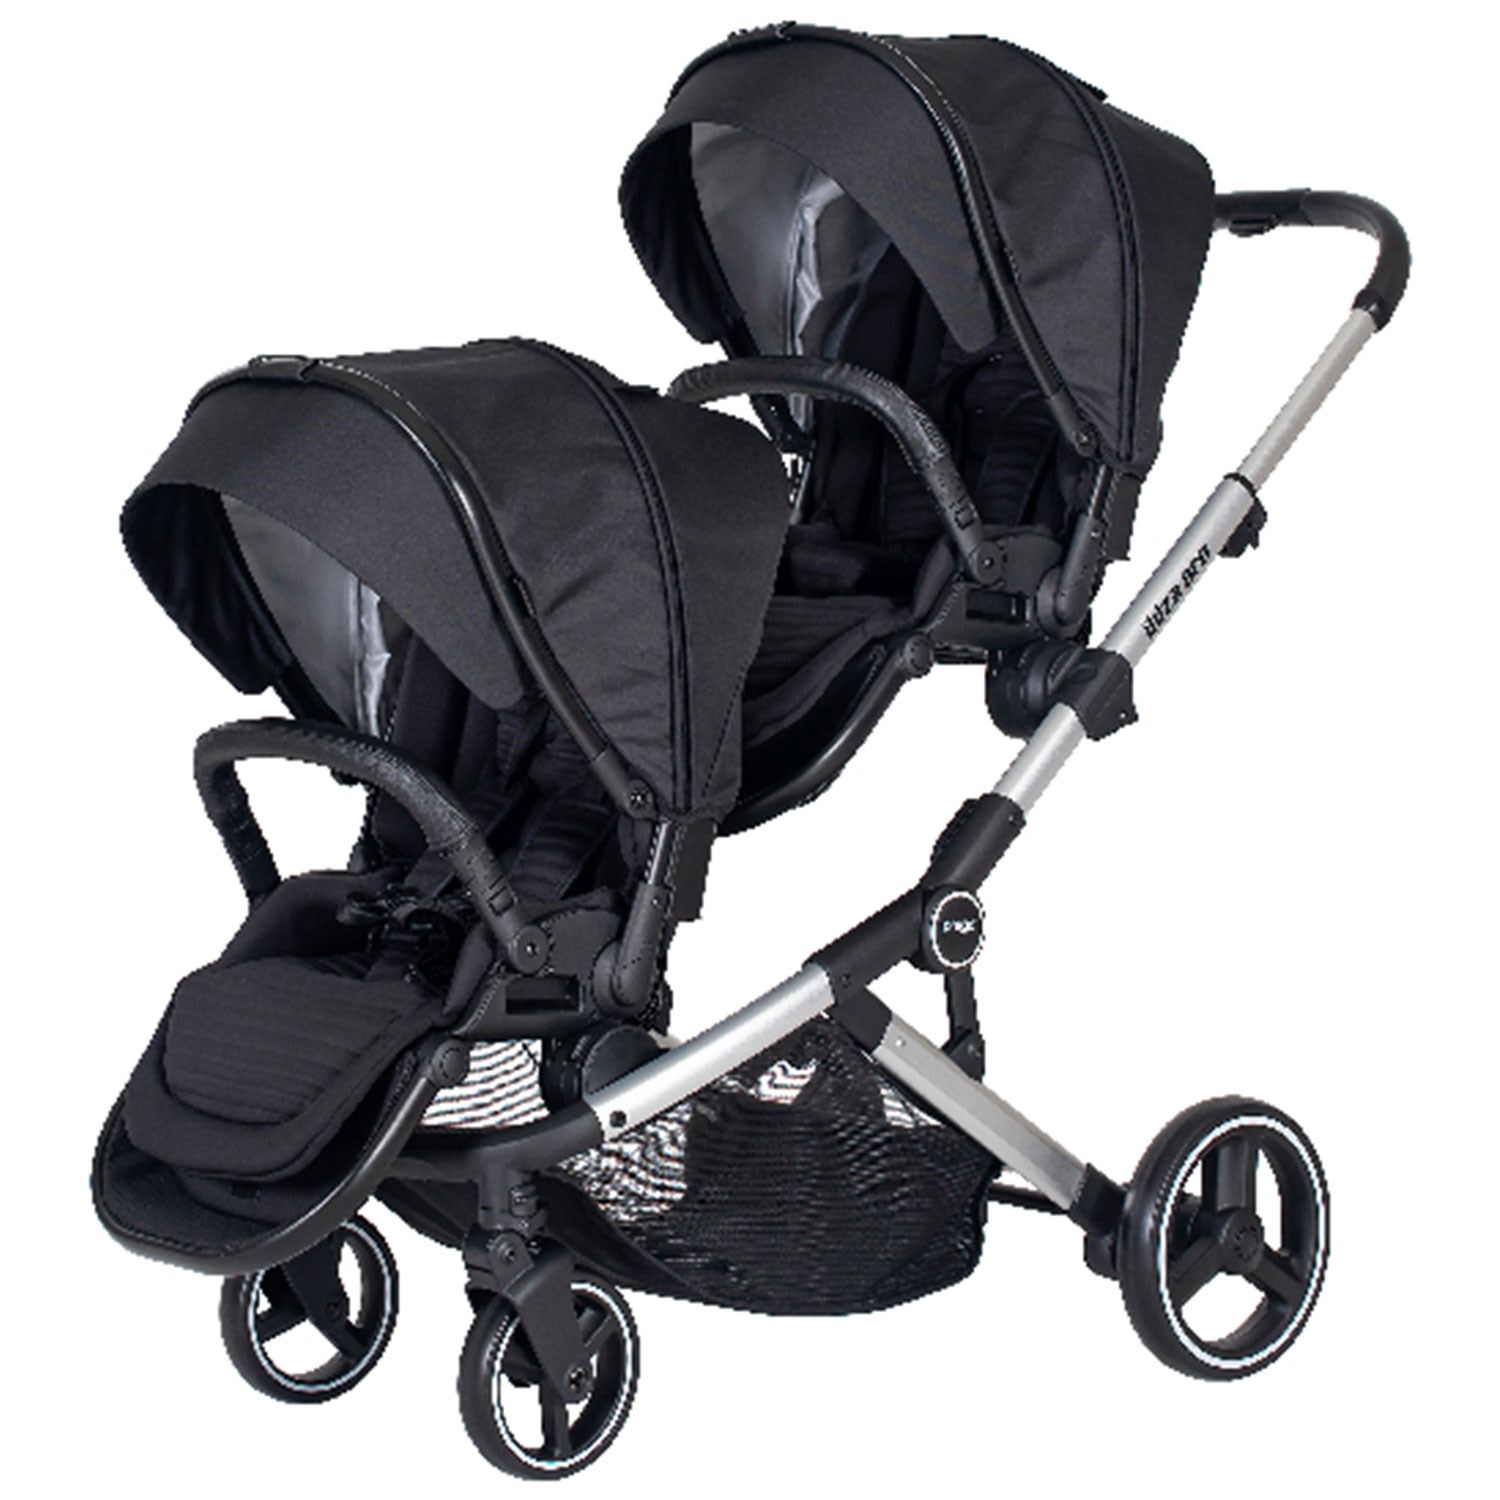 Prego Pro Travel Sistem İkiz Bebek Arabası 2071 Siyah Fiyatı